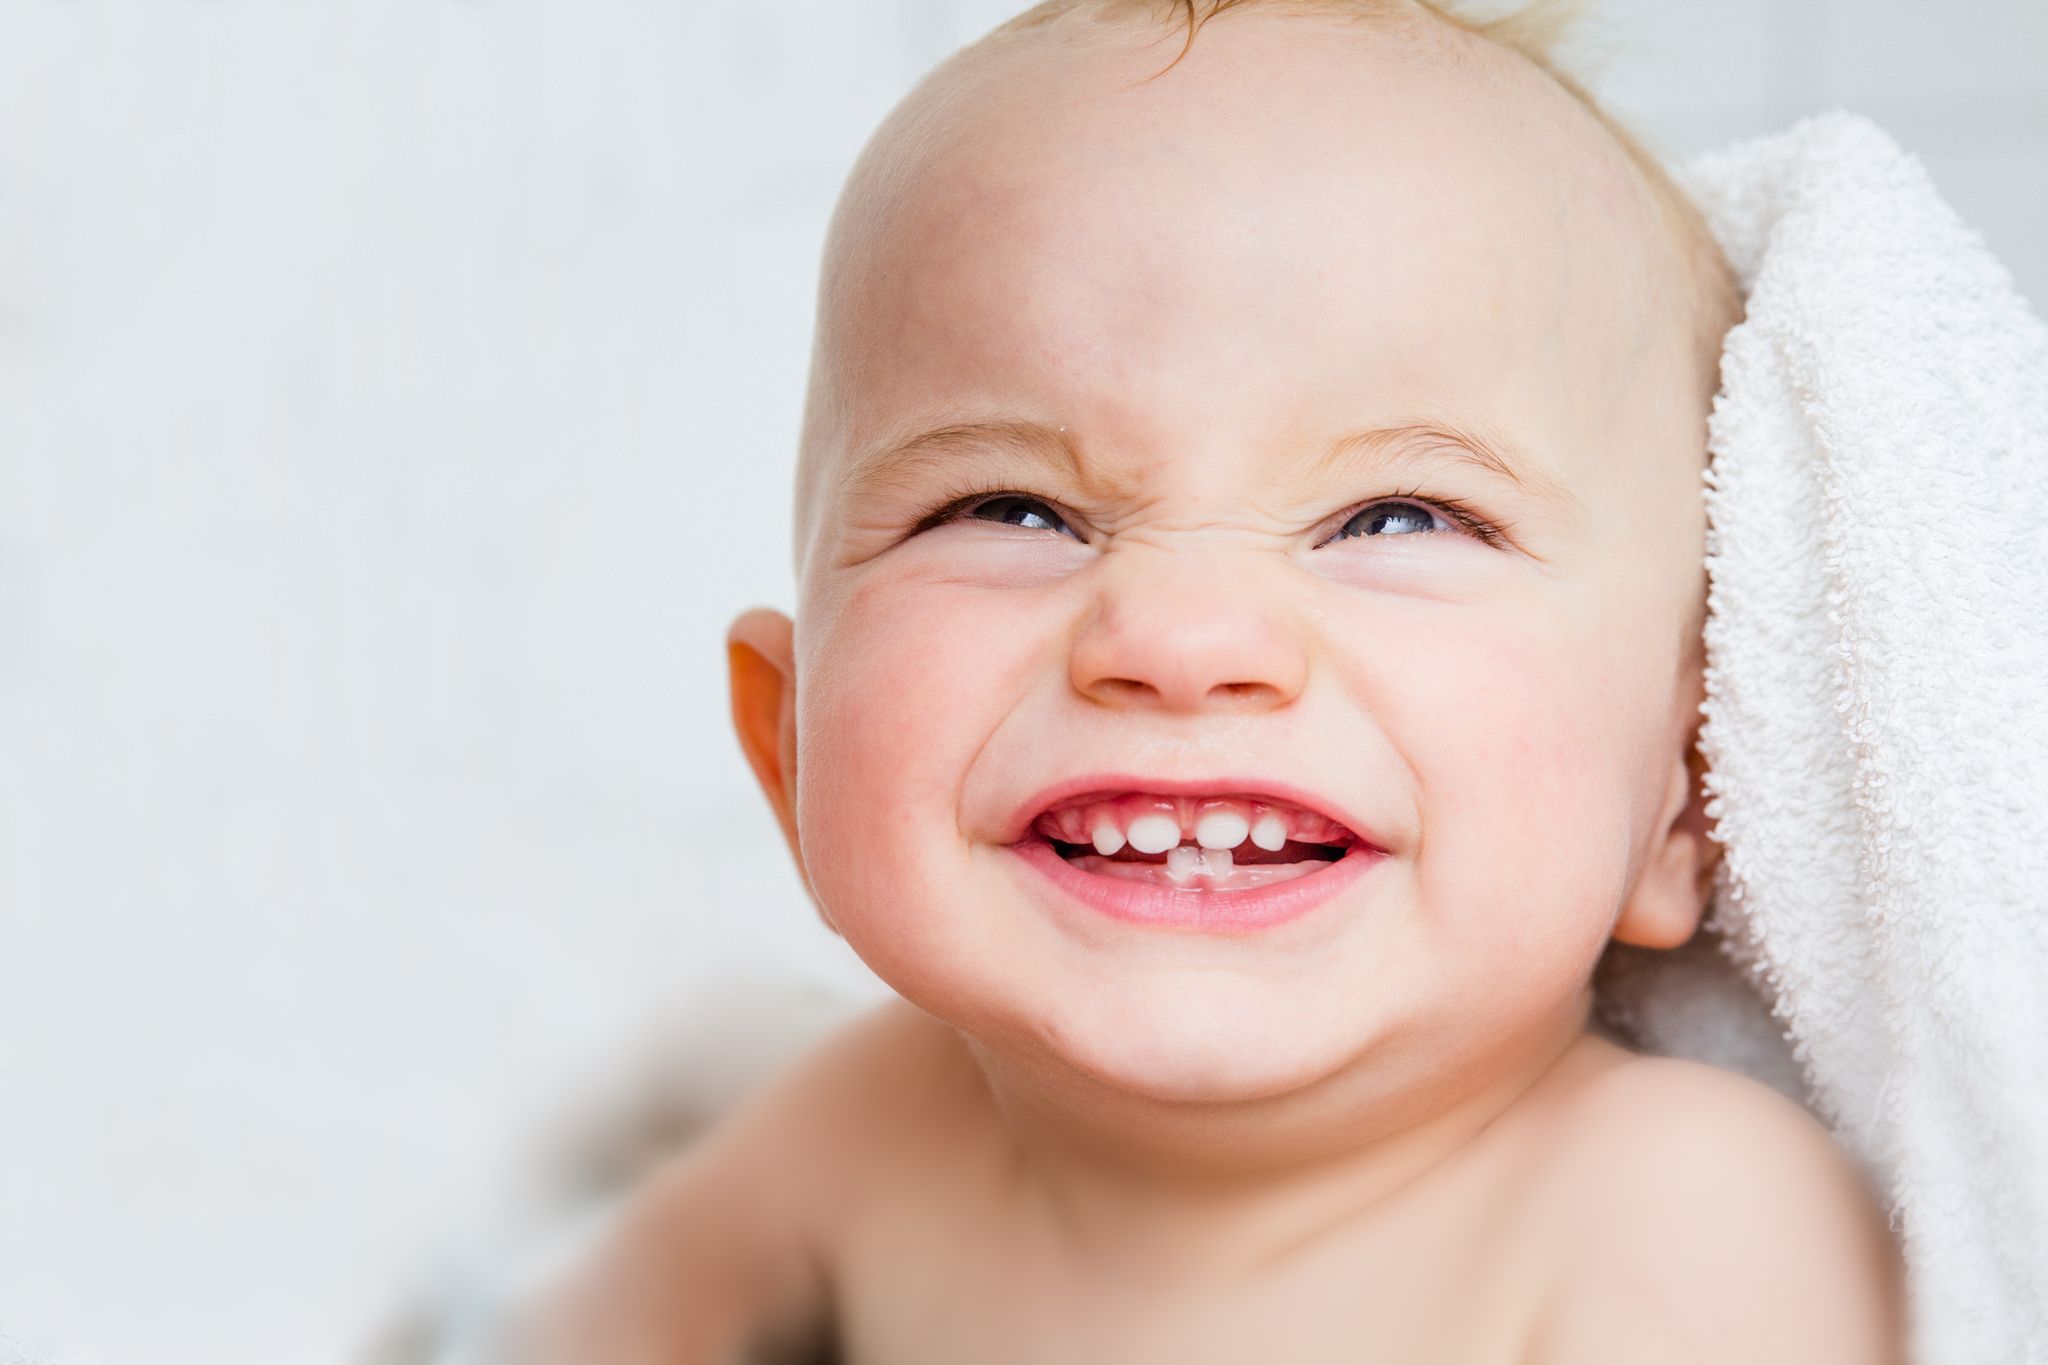 Comment soulager les douleurs d'un bébé qui fait ses dents? – L